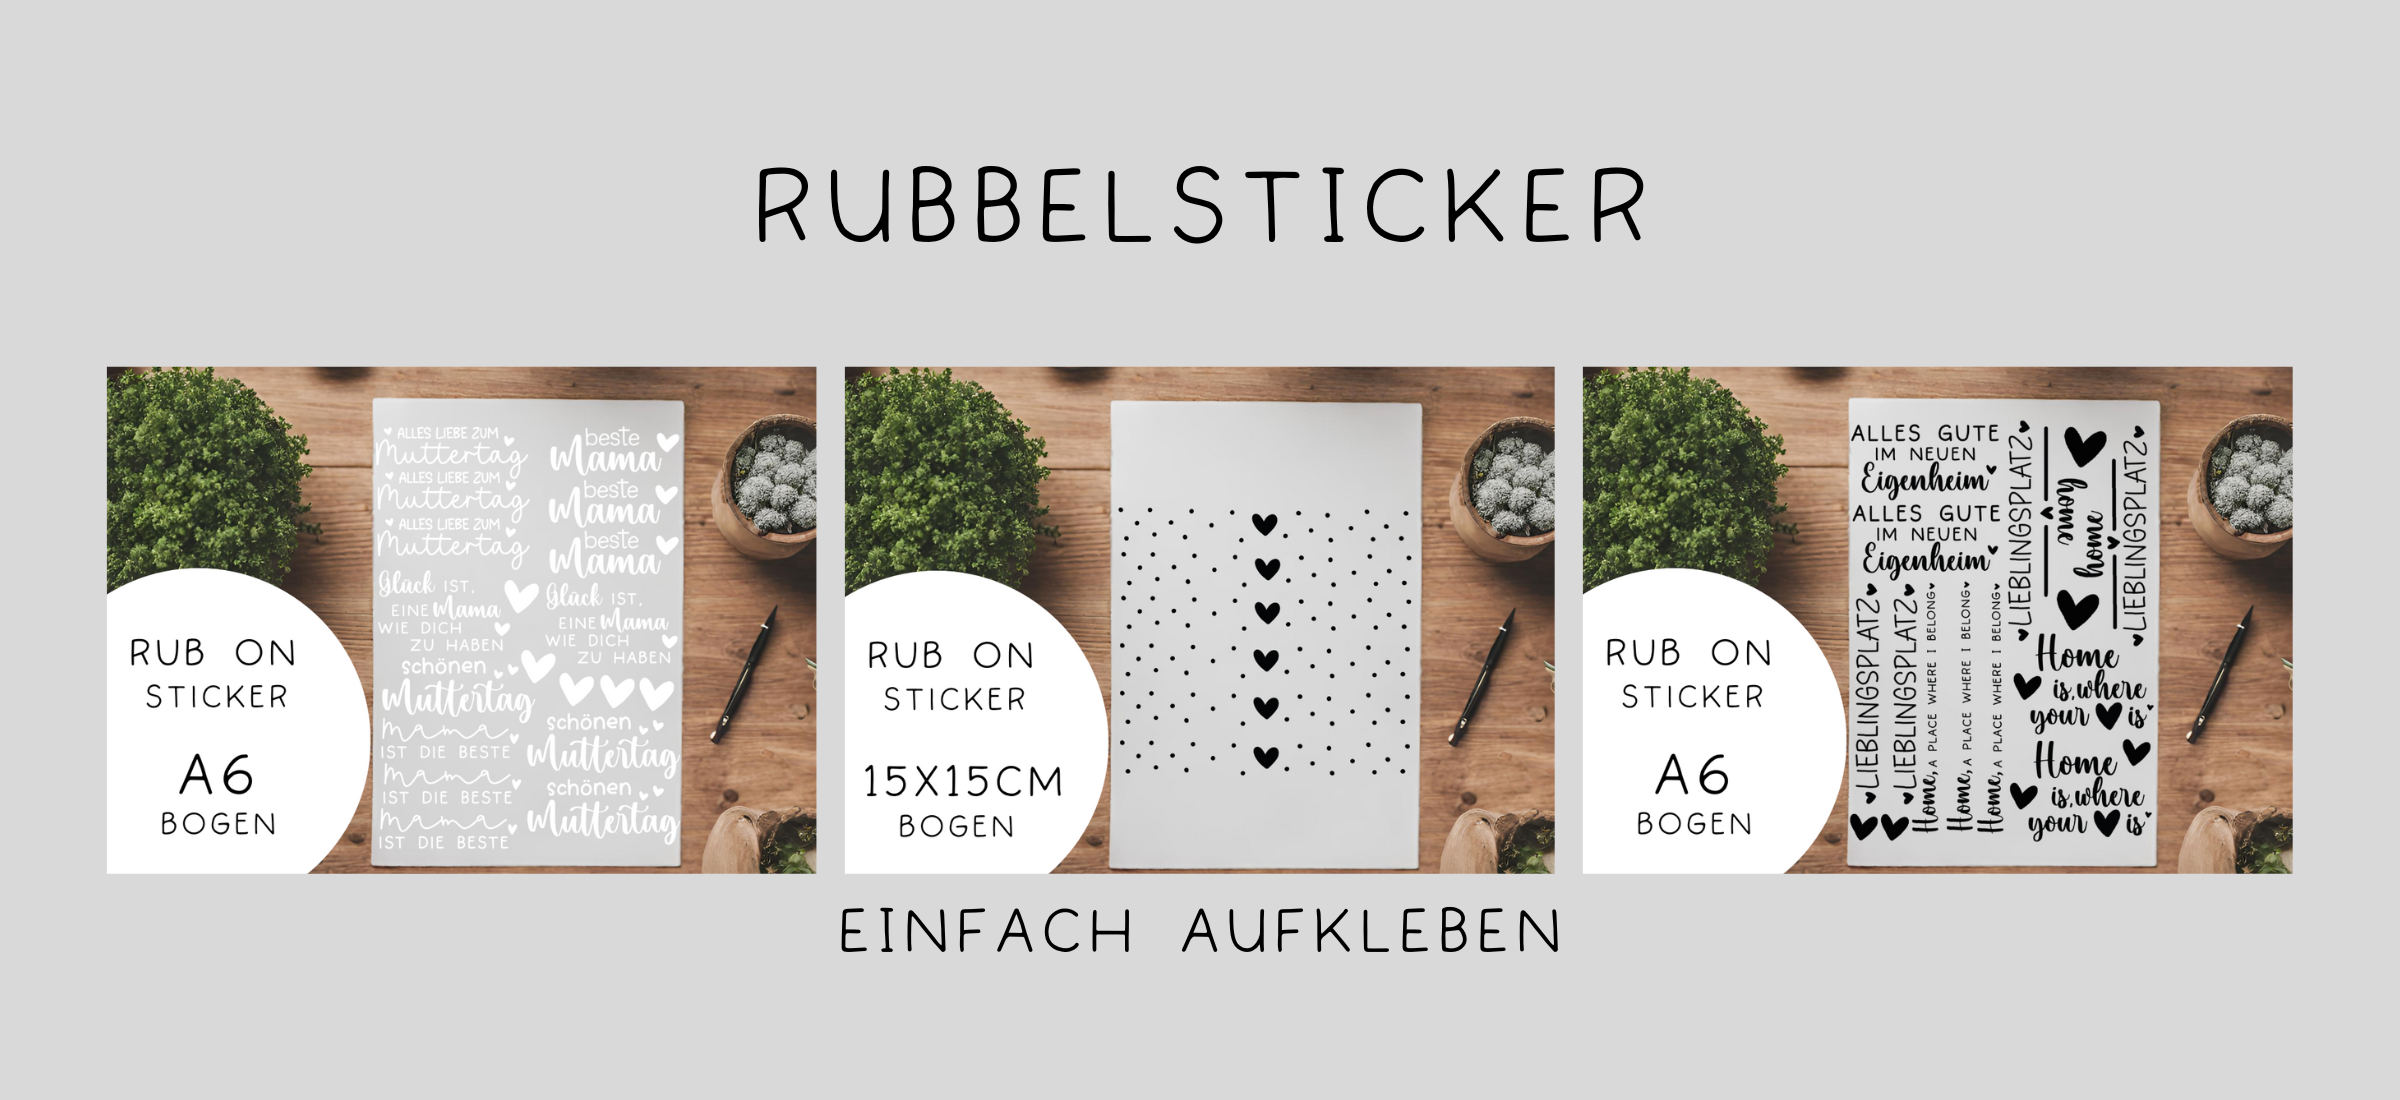 Rubbelsticker/RubOns